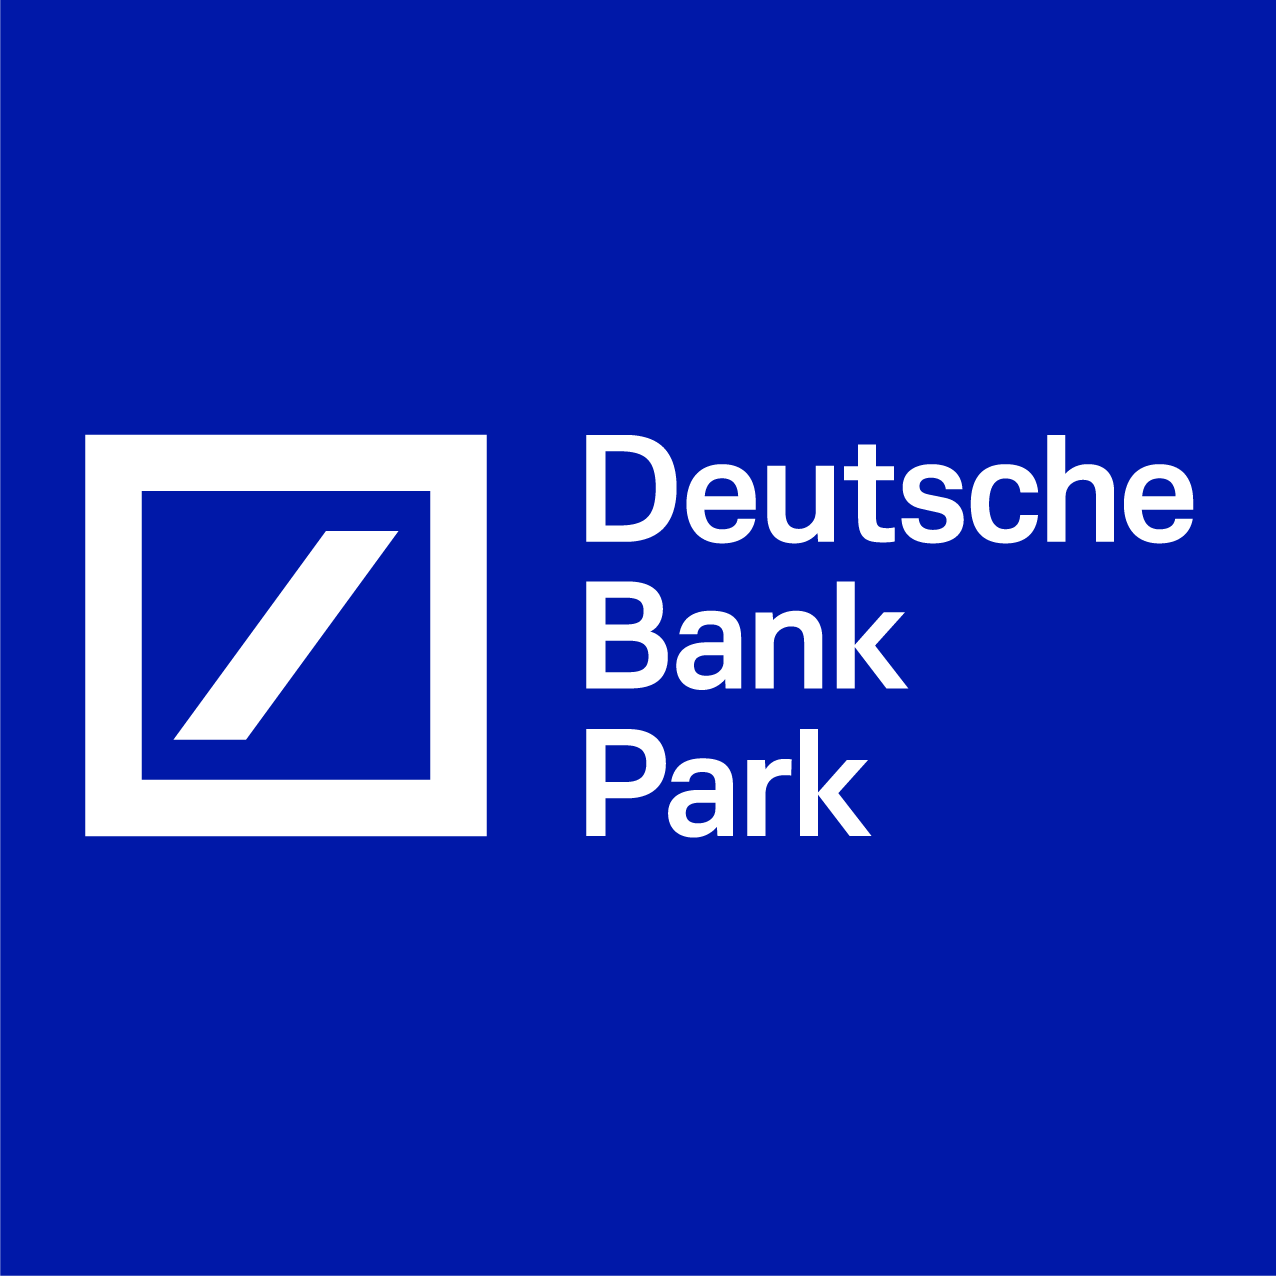 Deutsche Bank Park Tickets